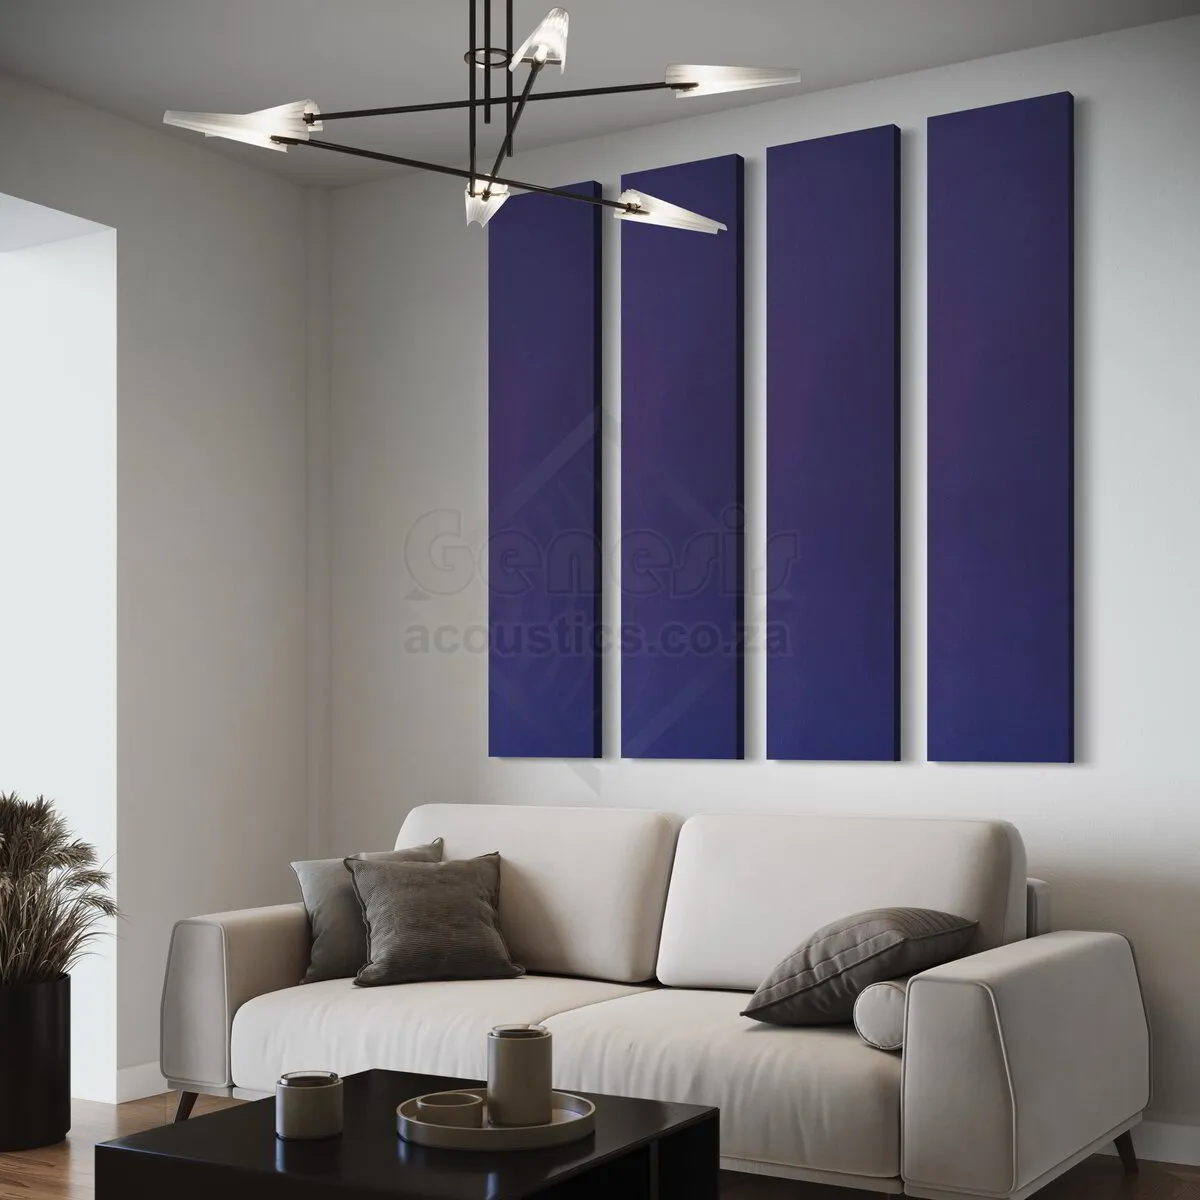 S5 Pro Acoustic Wall Panels - 180cm x 40cm Set of 4 - Purple